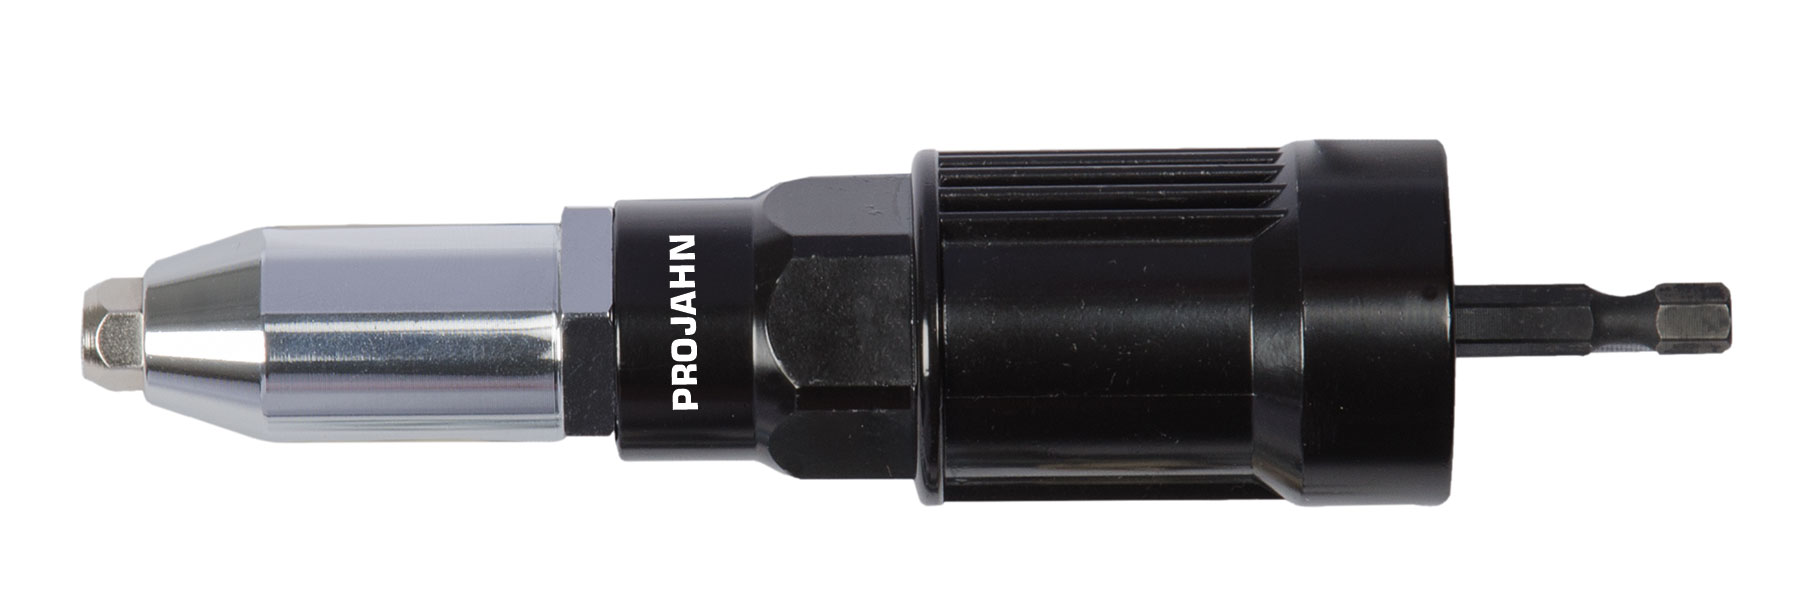 PROFI-Blindnietvorsatz-Adapter ohne Haltegriff Zur Verarbeitung von Blindnieten der Durchmesser 2,4 / 3,0 / 3,2 / 4,0 / 4,8 /5,0 mm